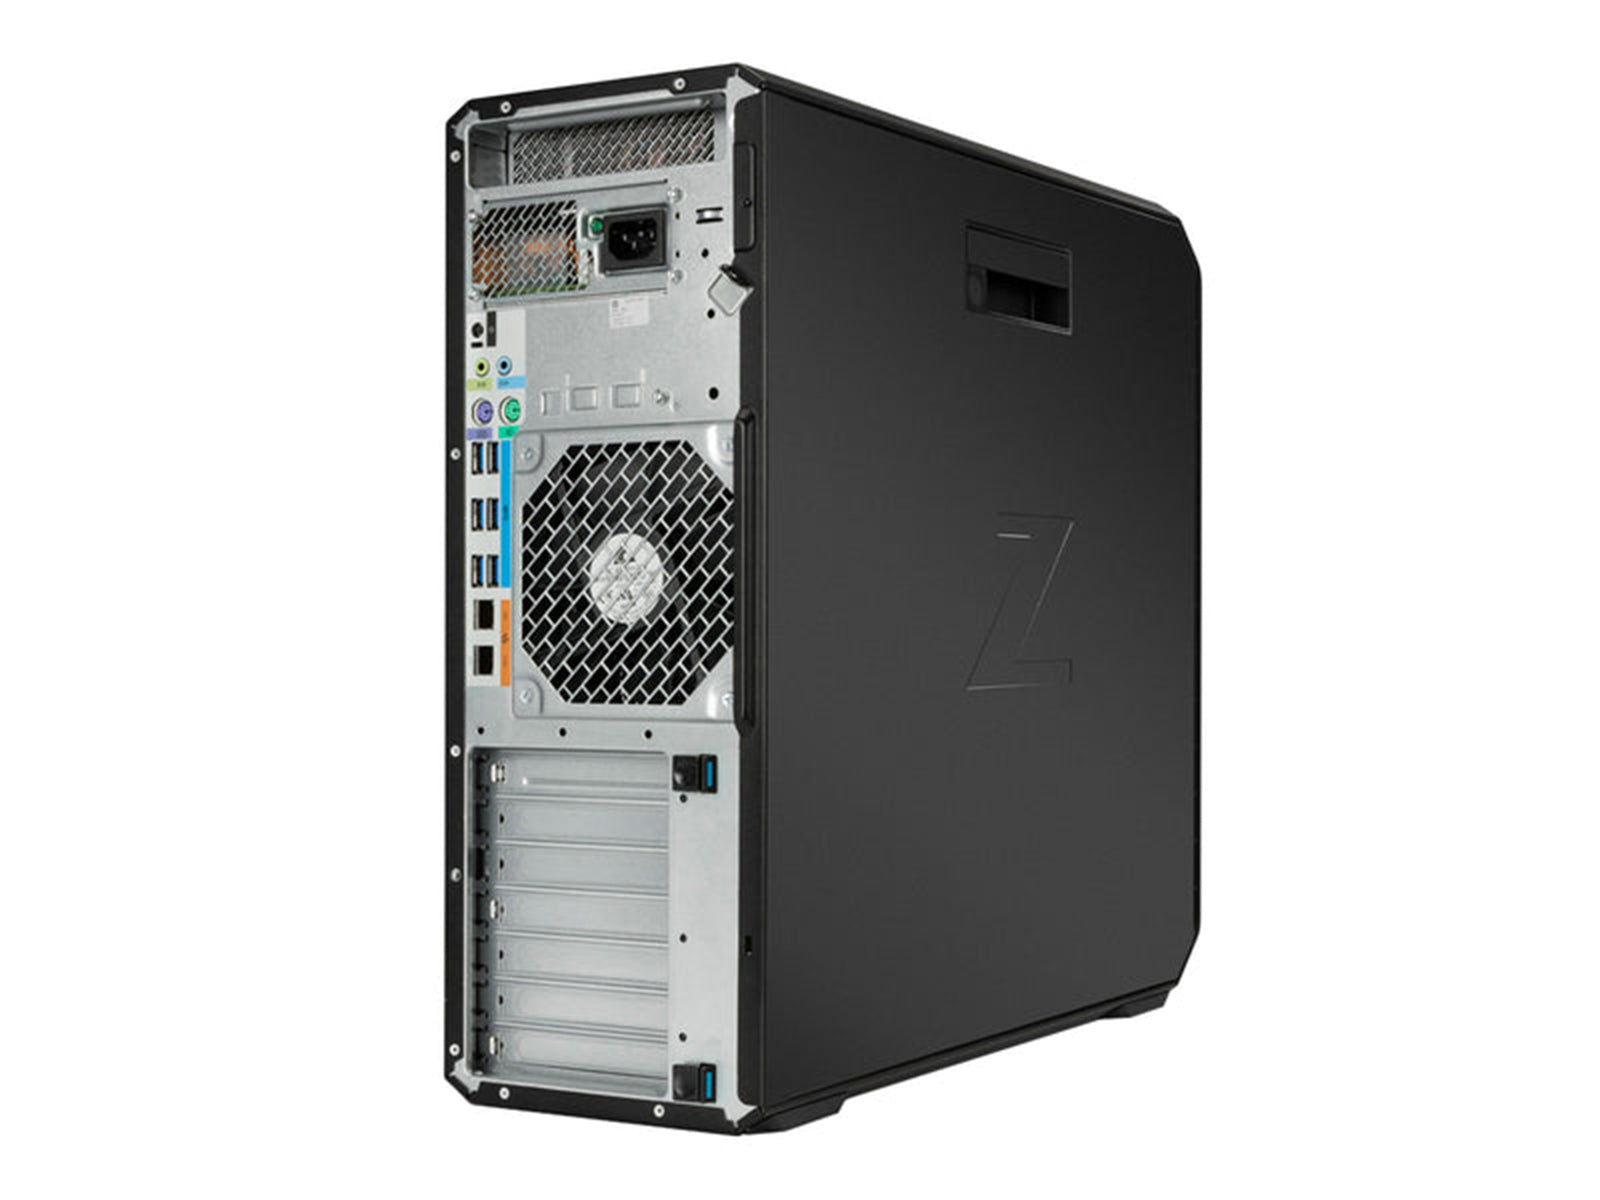 HP Z6 G4 |インテル Xeon シルバー 4215R | 64GB DDR4 | 512GB + 1TB NVMe SSD |クアドロP2200 | Win10プロ